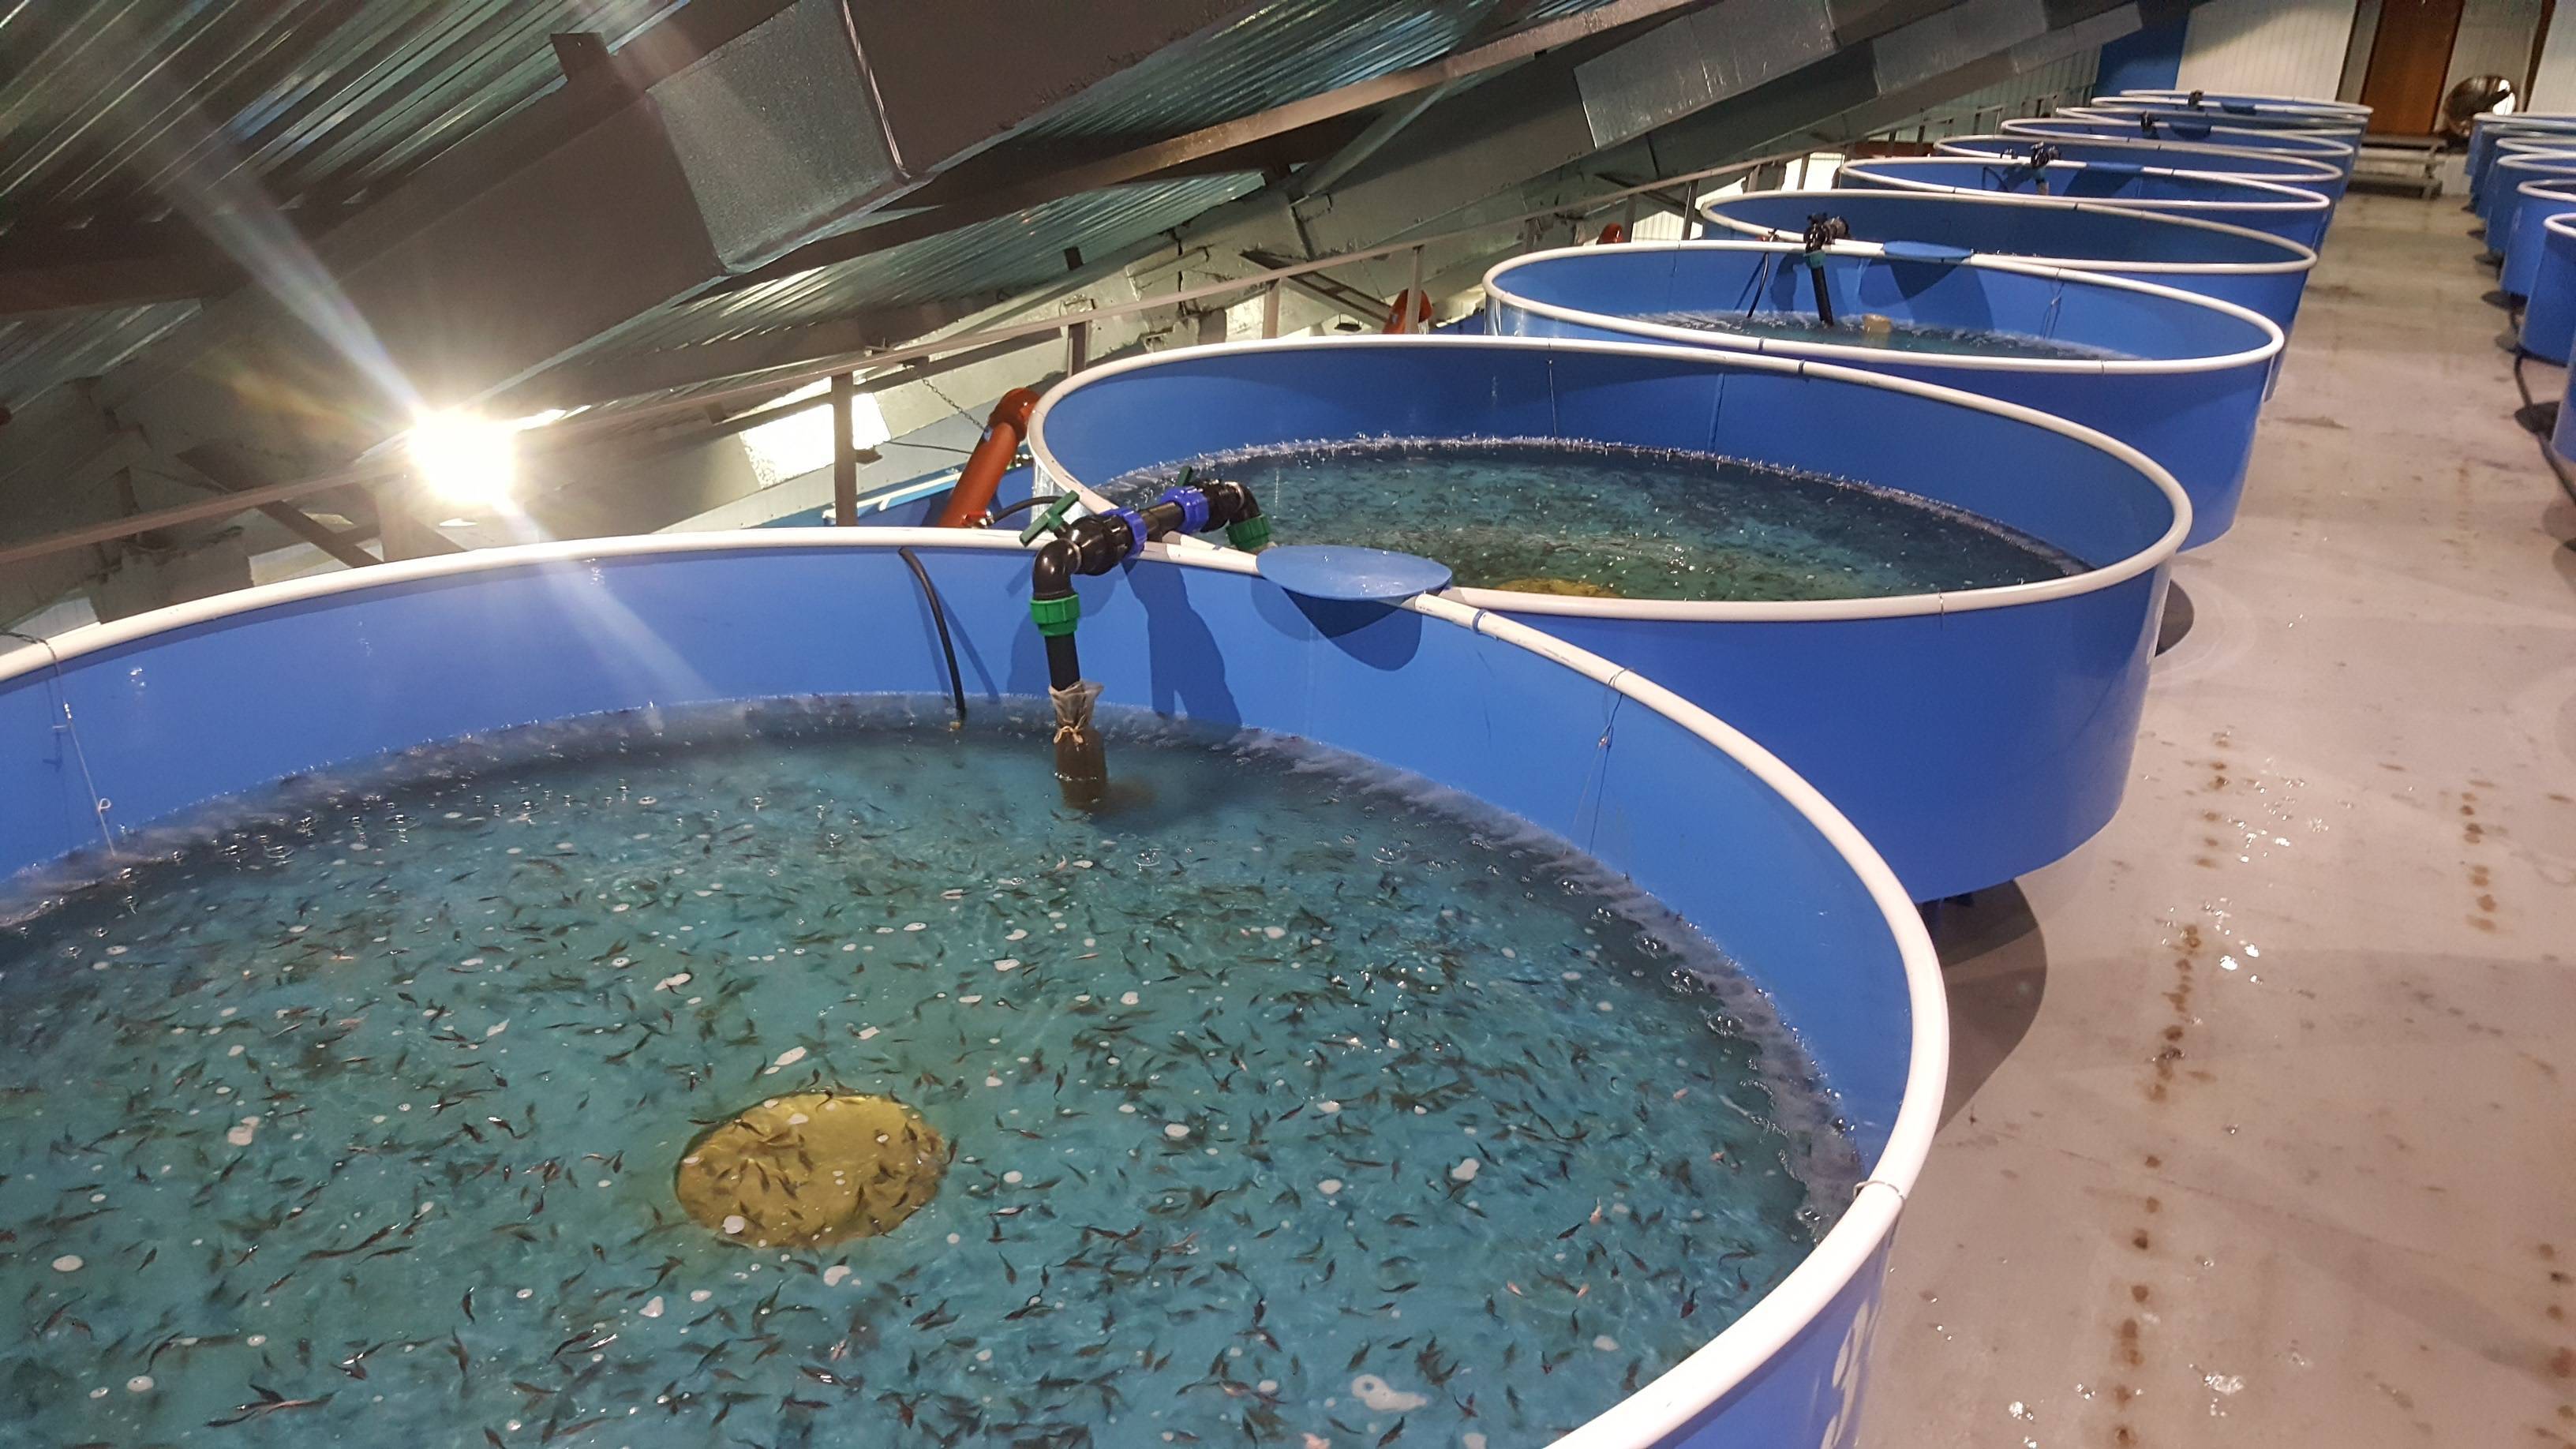 Разведение рыбы в искусственных водоемах как бизнес - выгодно или нет: с чего начать, как преуспеть + читайте наши полезные советы по преодолению «под